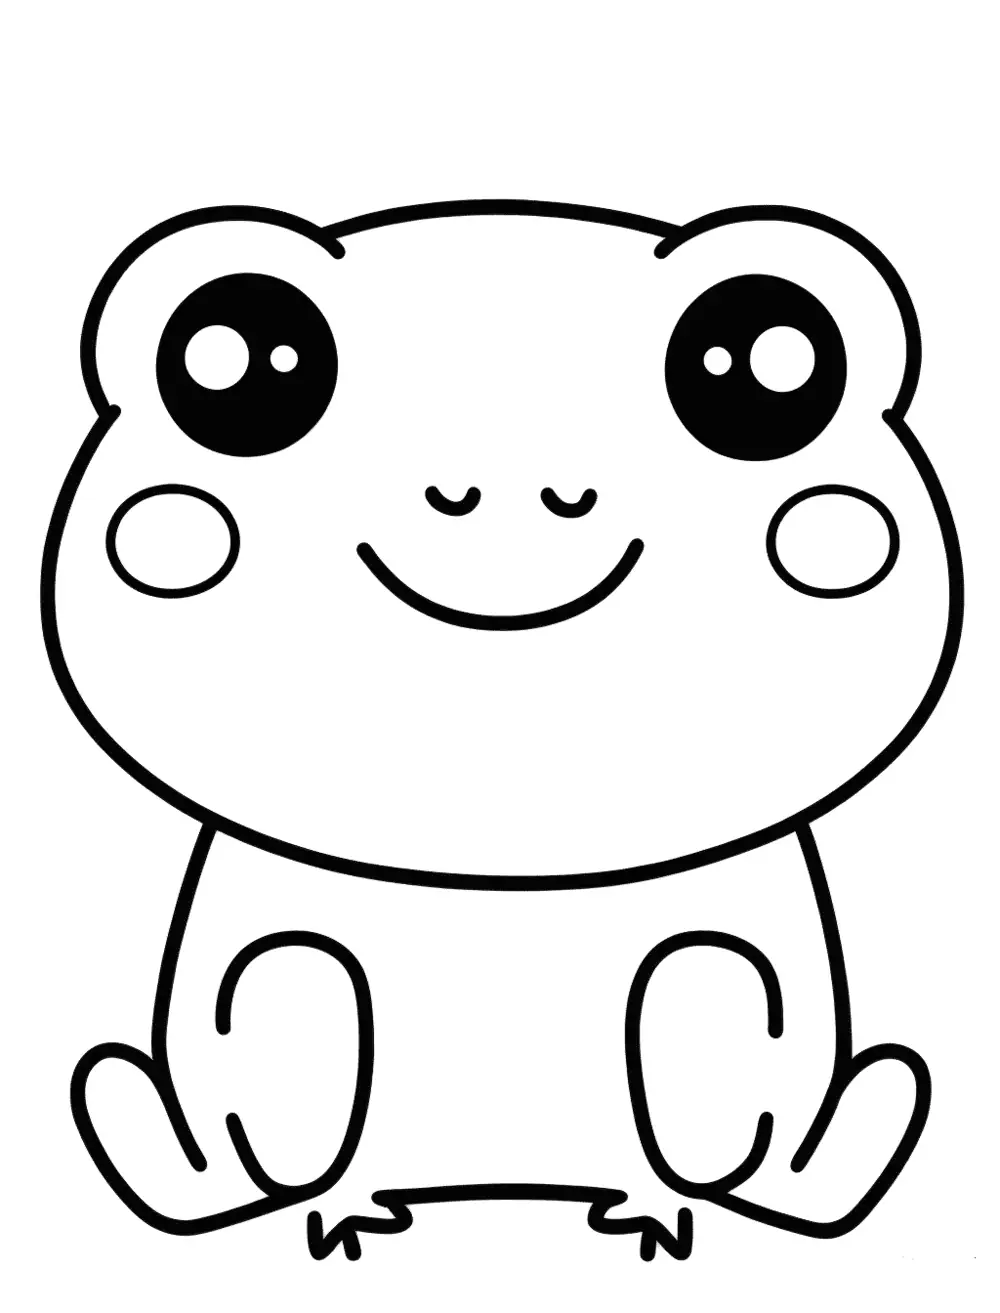 Kawaii fFrog Frog Coloring Page - A kawaii, chubby frog with a big smile and big eyes.